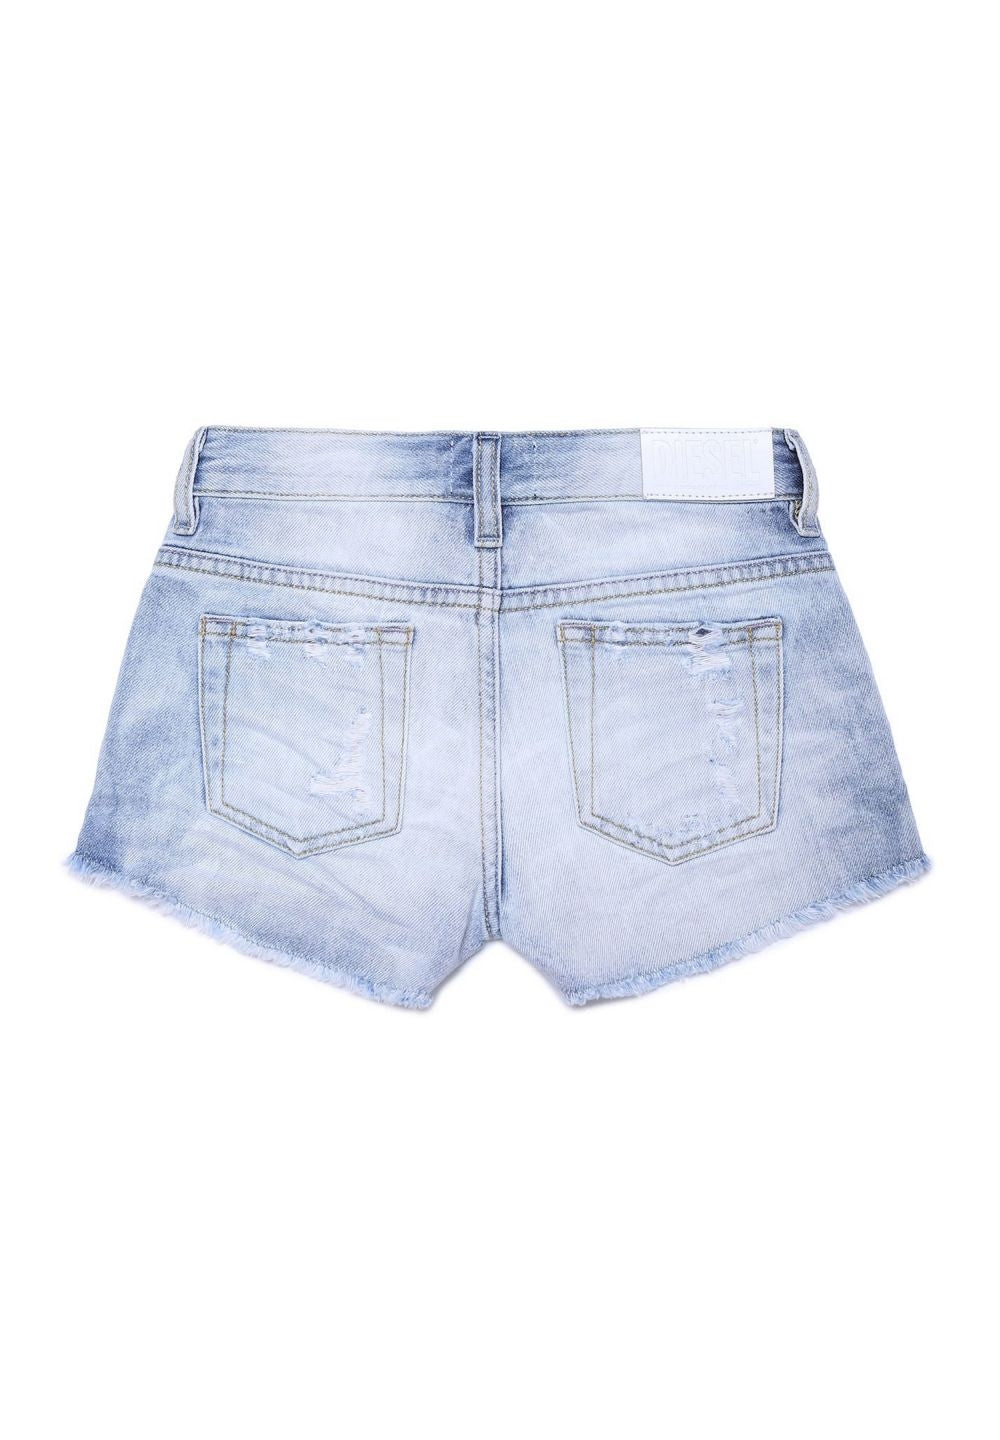 Light blue denim shorts for girls